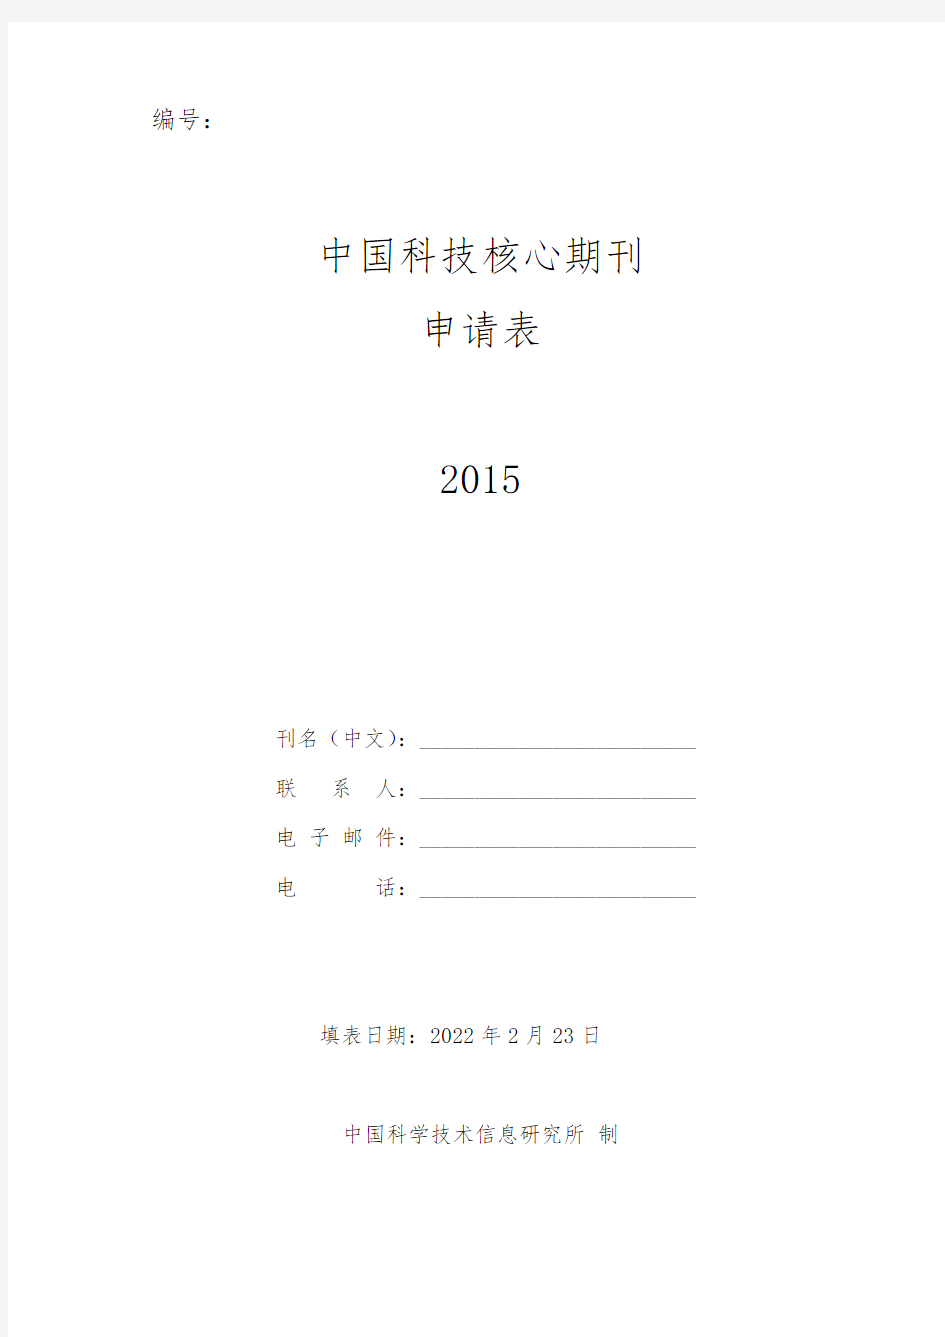 中国科技核心期刊申请表2015版